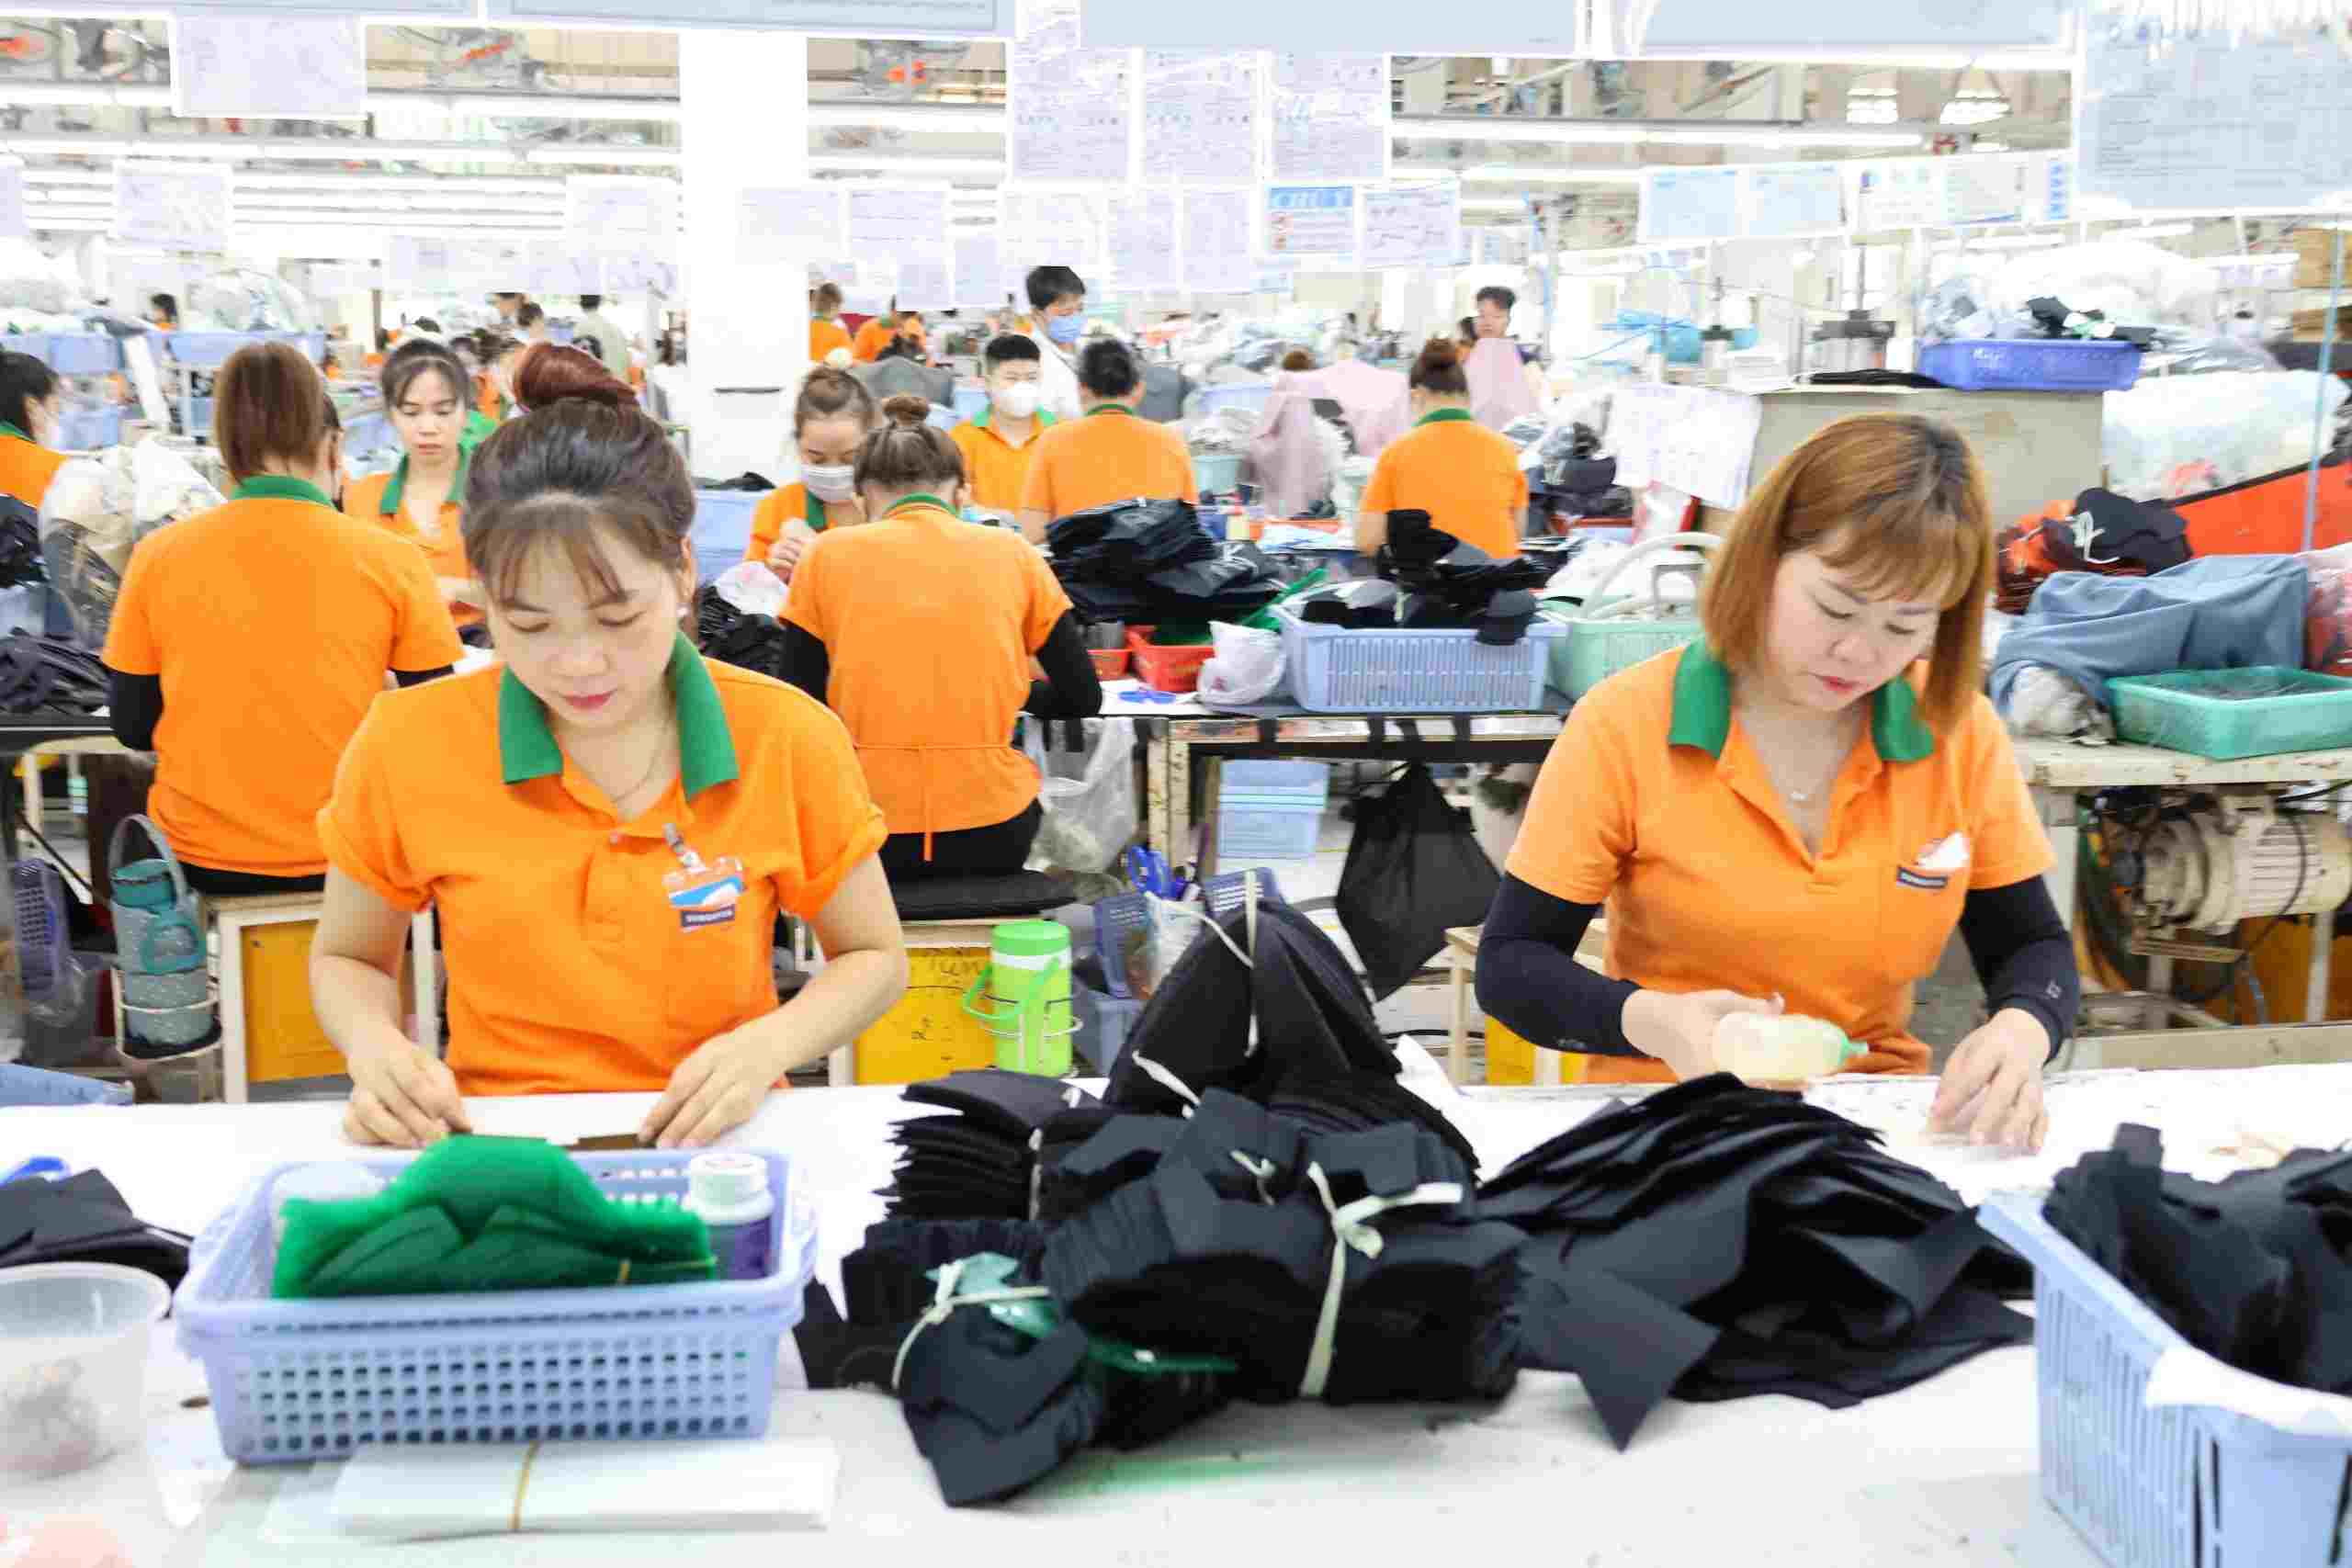 Có khoảng trên 2.000 công nhân lao động đang làm việc, chủ yếu trong lĩnh vực may mặc. Ảnh: Đình Trọng